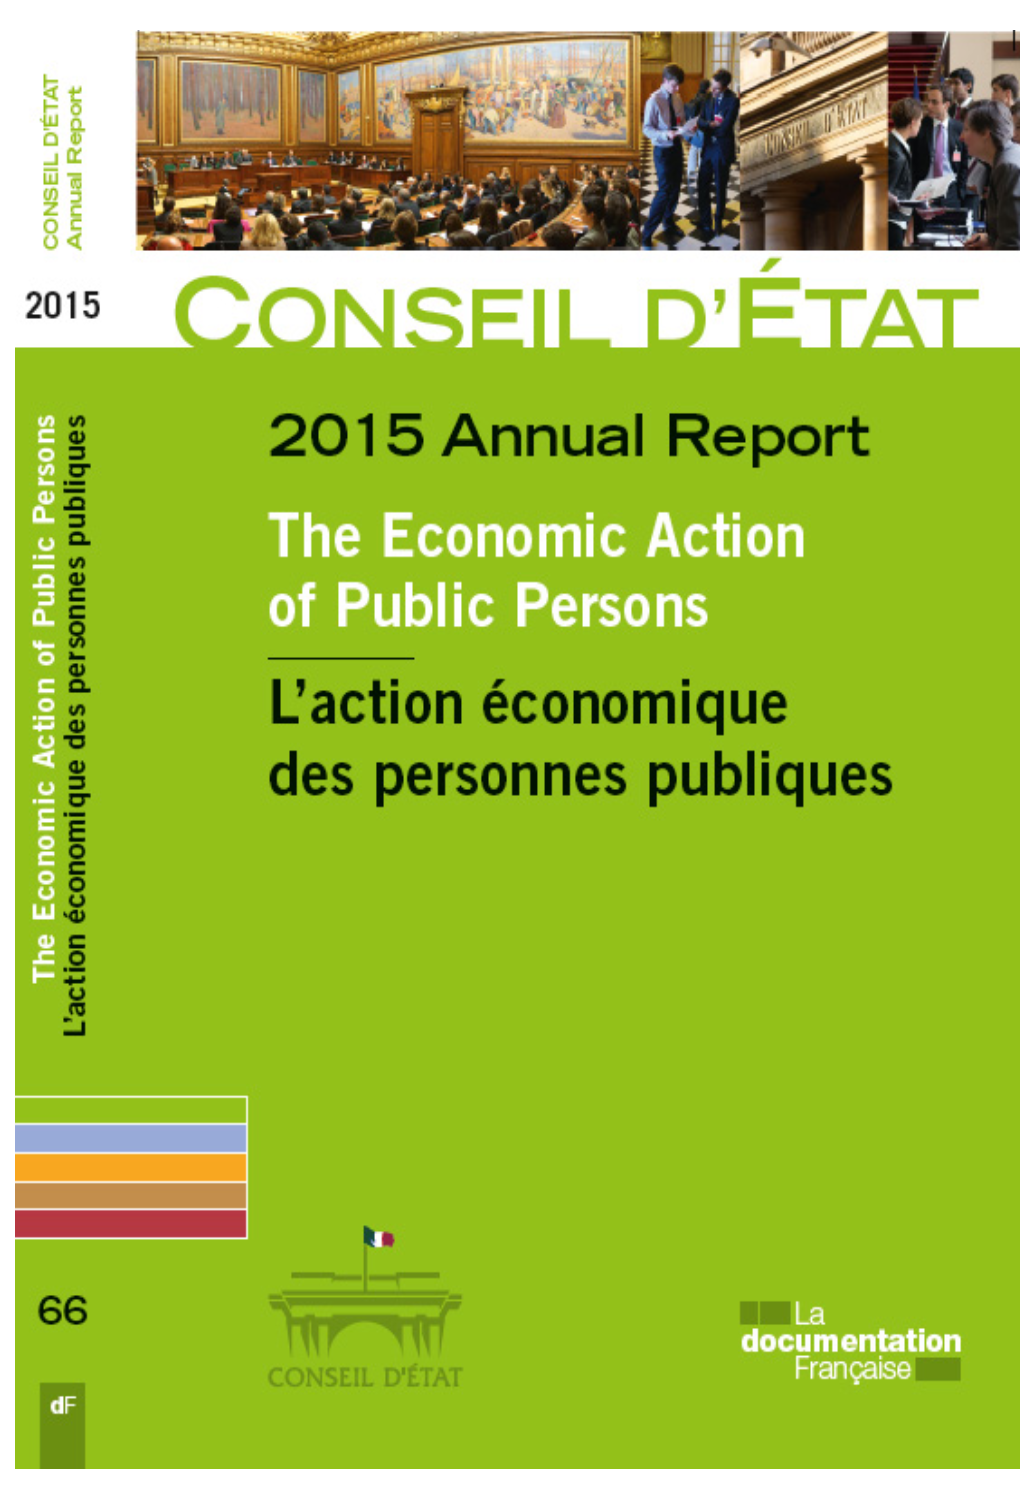 Conseil D'état Reports (Former Conseil D'état Studies and Documents Collection)